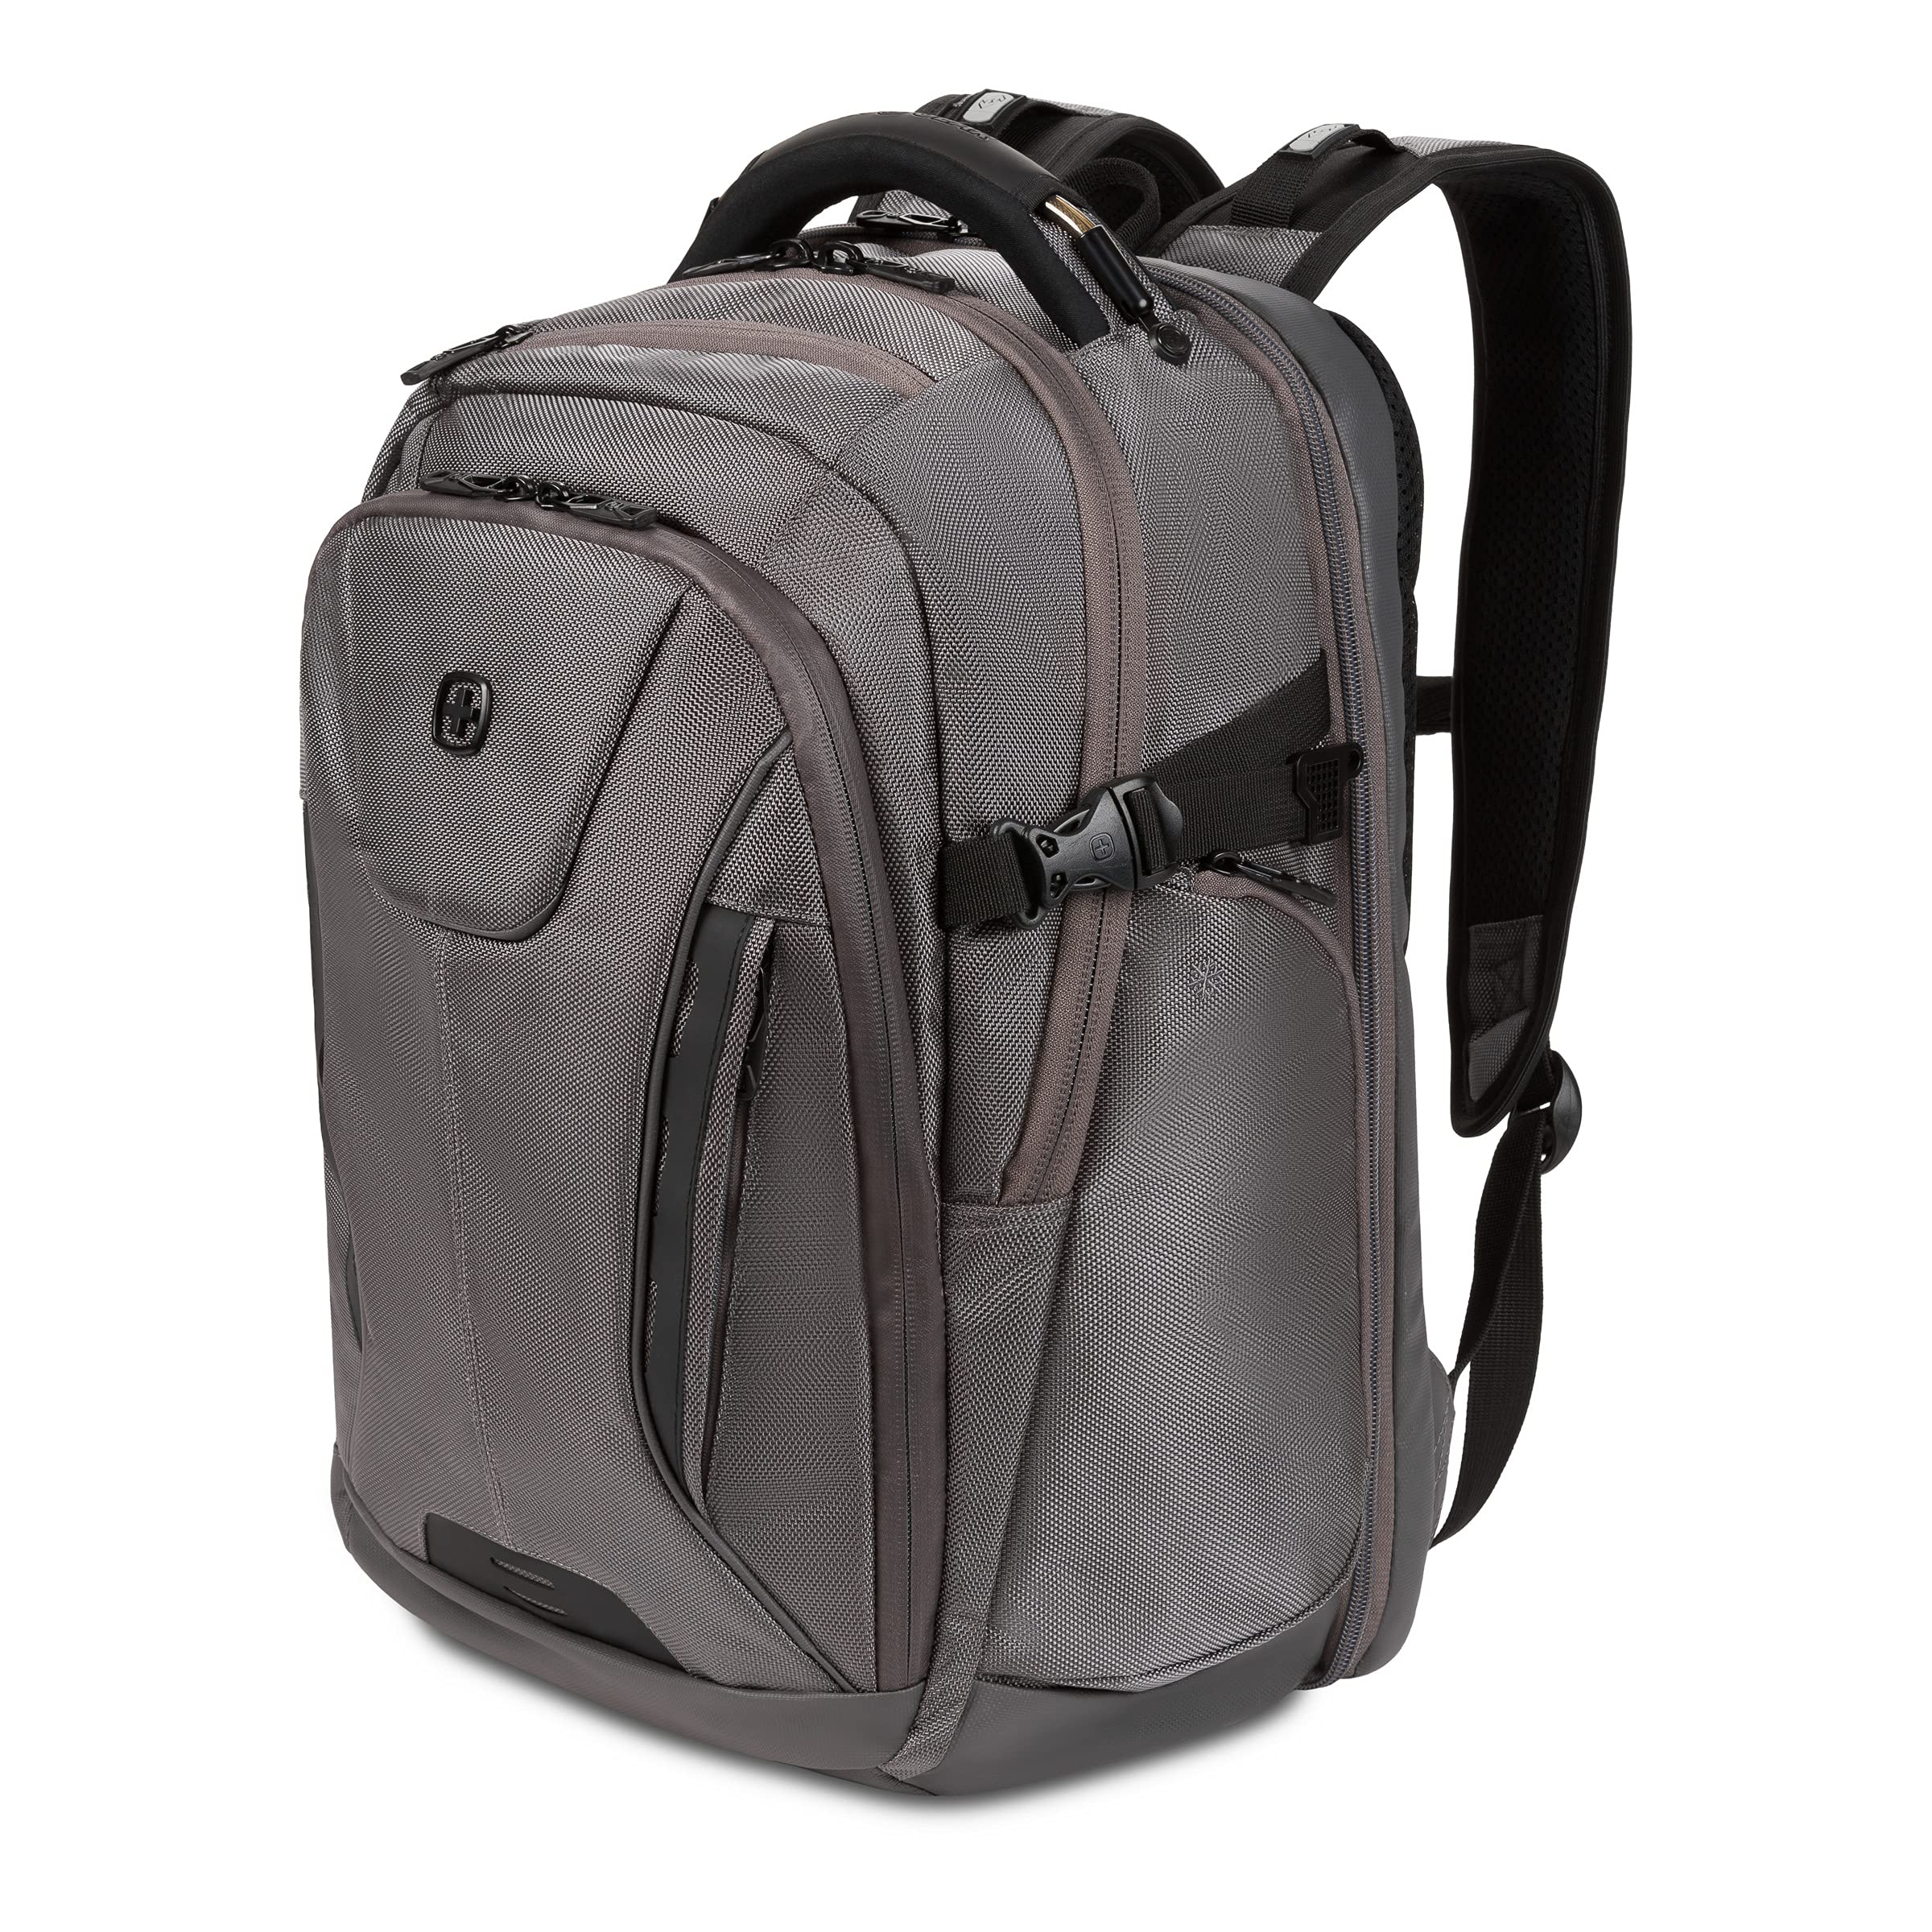 SwissGear ScanSmart Laptop Bag, Gray Ballistic, Fits 15-Inch Notebook